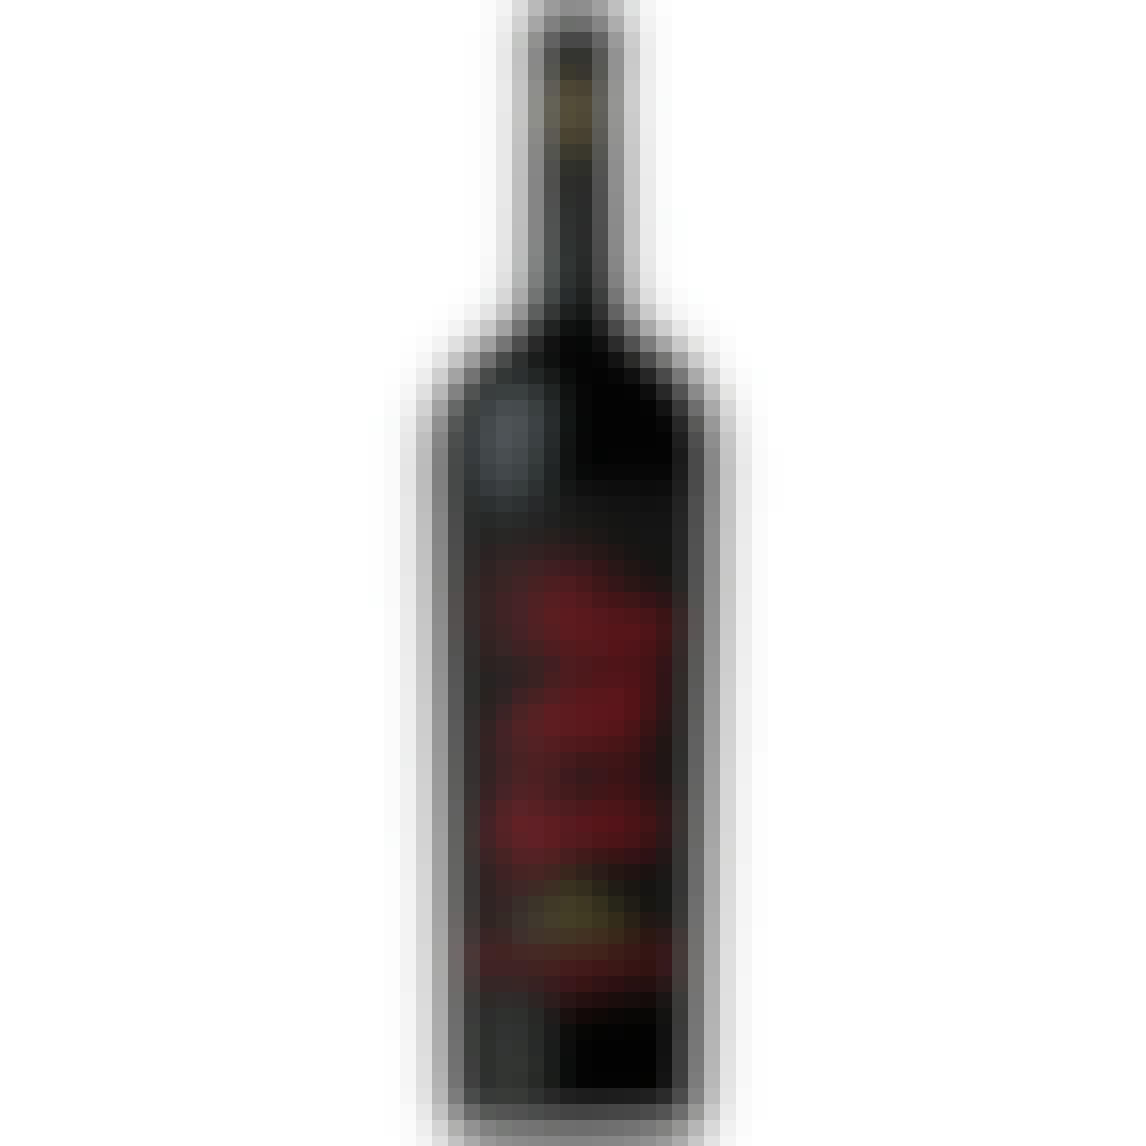 Antinori Brunello di Montalcino Pian delle Vigne 2016 750ml